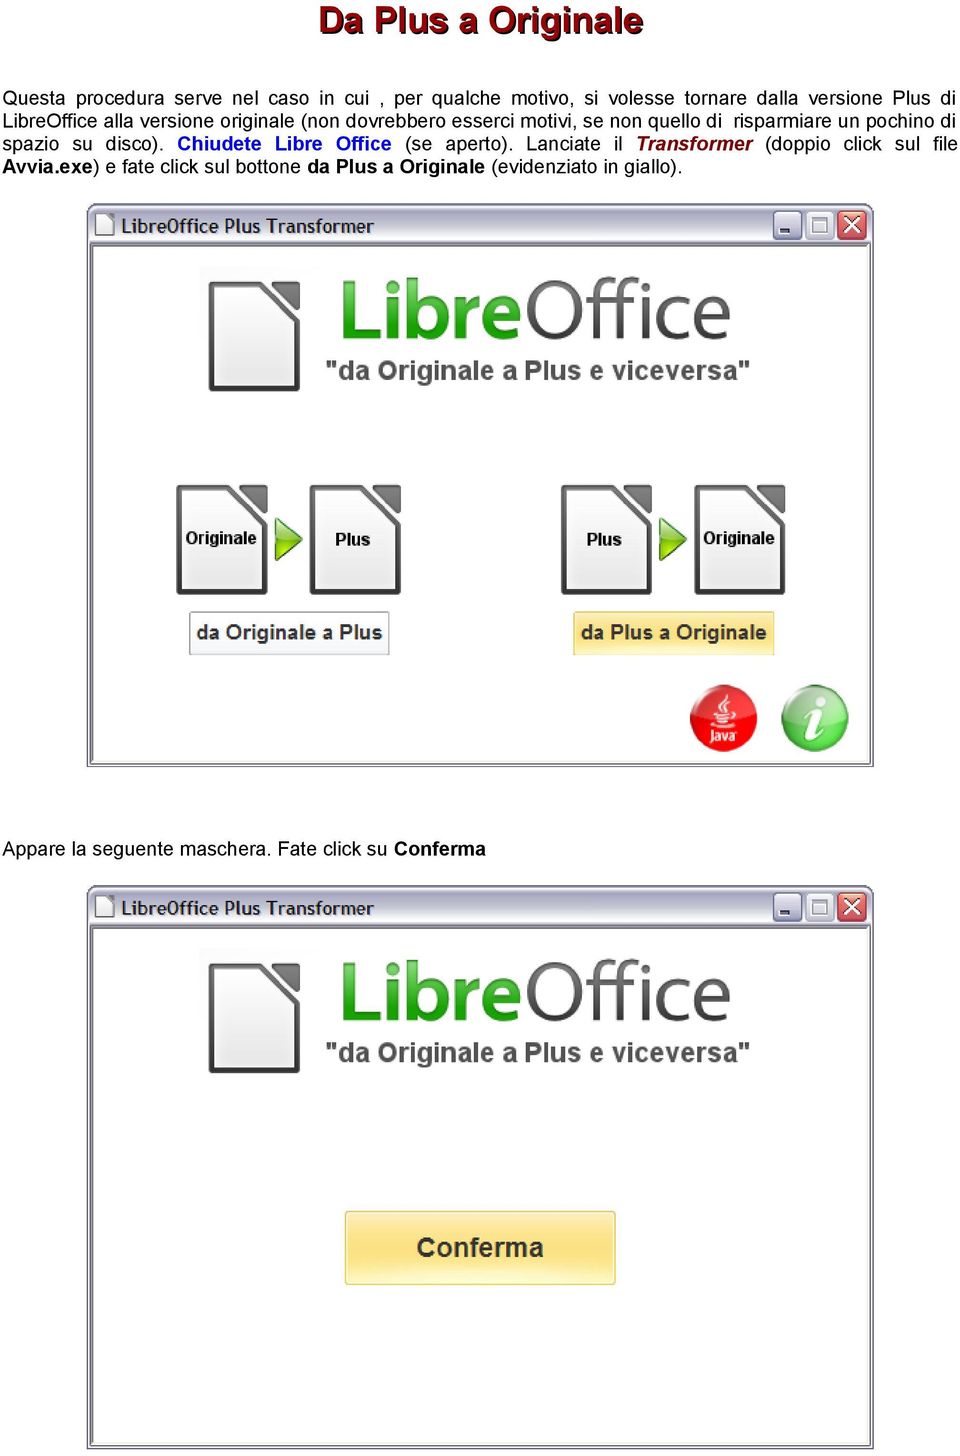 di spazio su disco). Chiudete Libre Office (se aperto). Lanciate il Transformer (doppio click sul file Avvia.